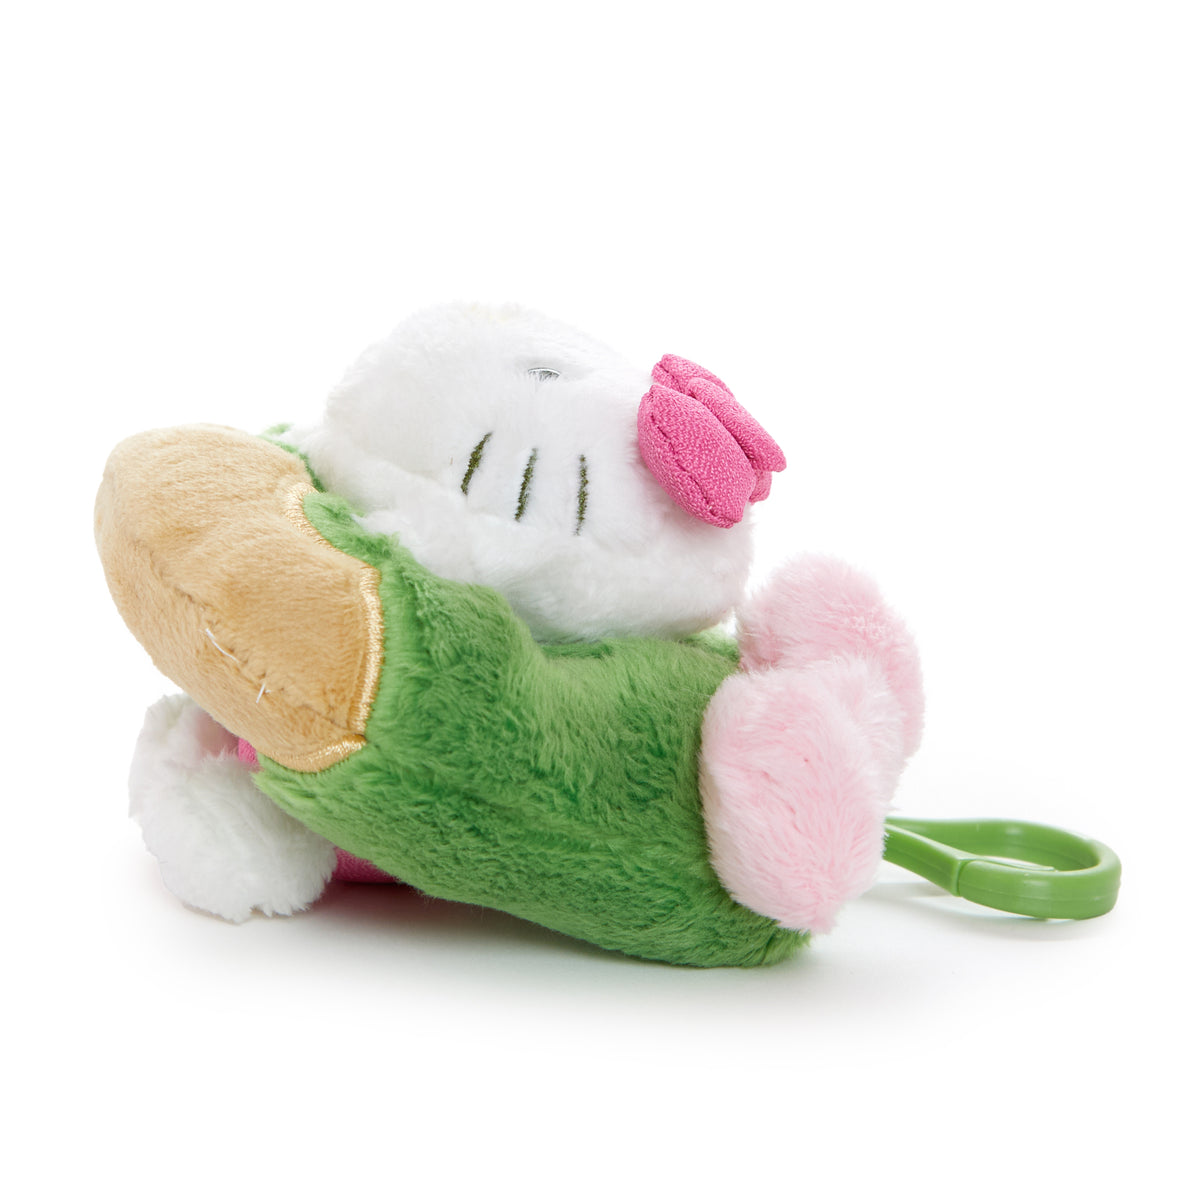 Hello Kitty Donut Mascot Clip (Matcha Sweets Series) Plush NAKAJIMA CORPORATION   